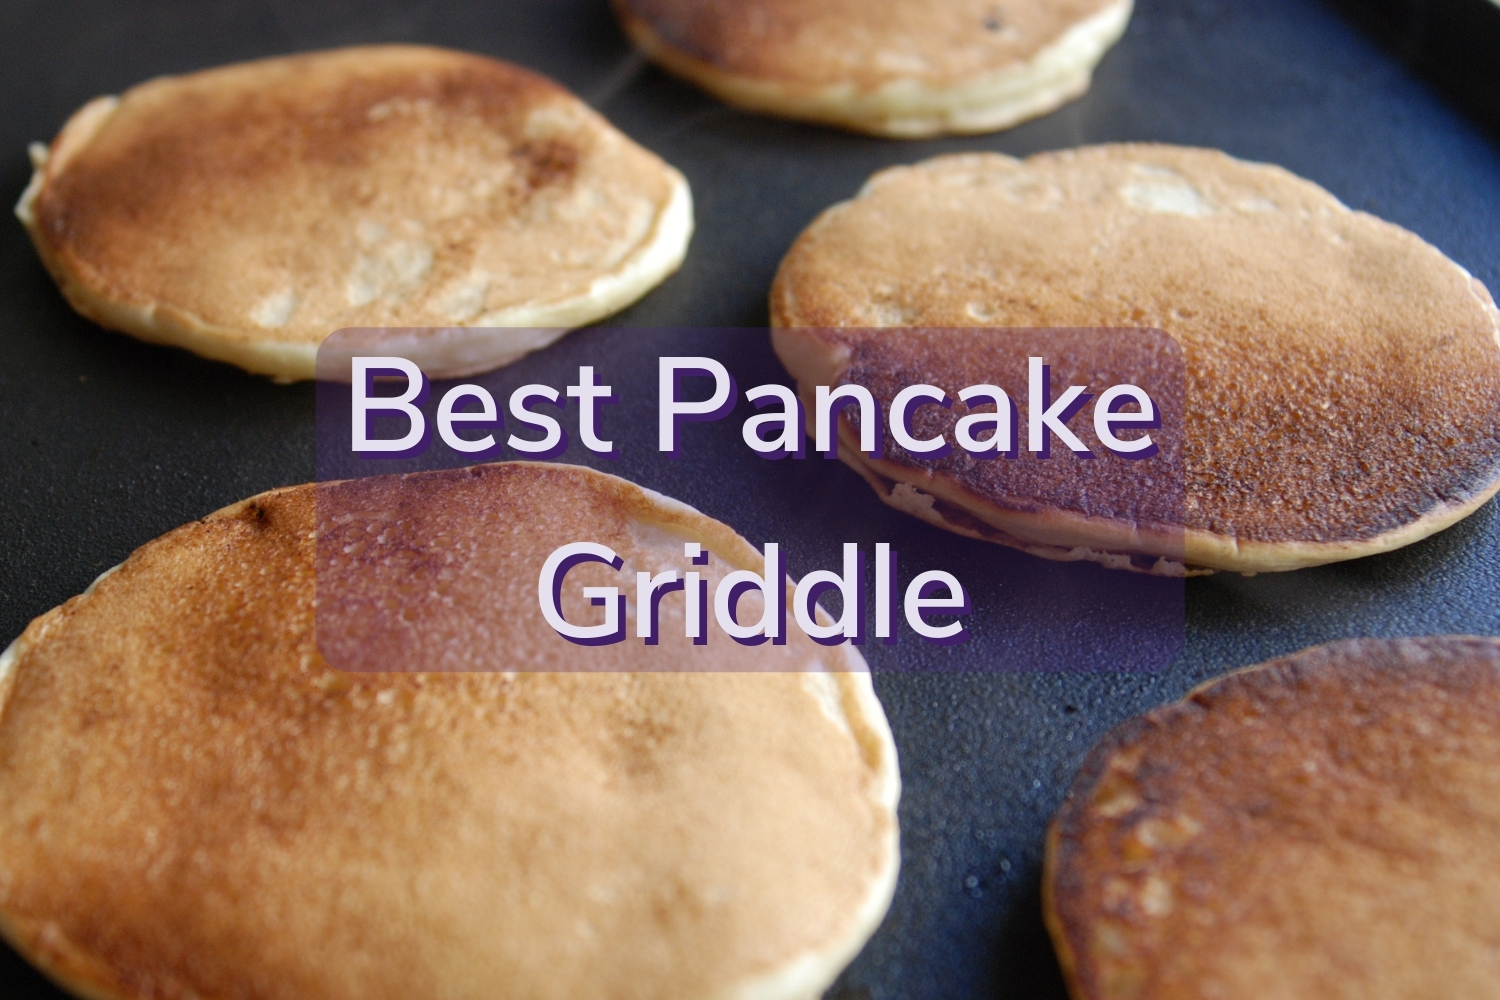 https://clankitchen.com/wp-content/uploads/2020/04/best-pancake-griddles.jpg